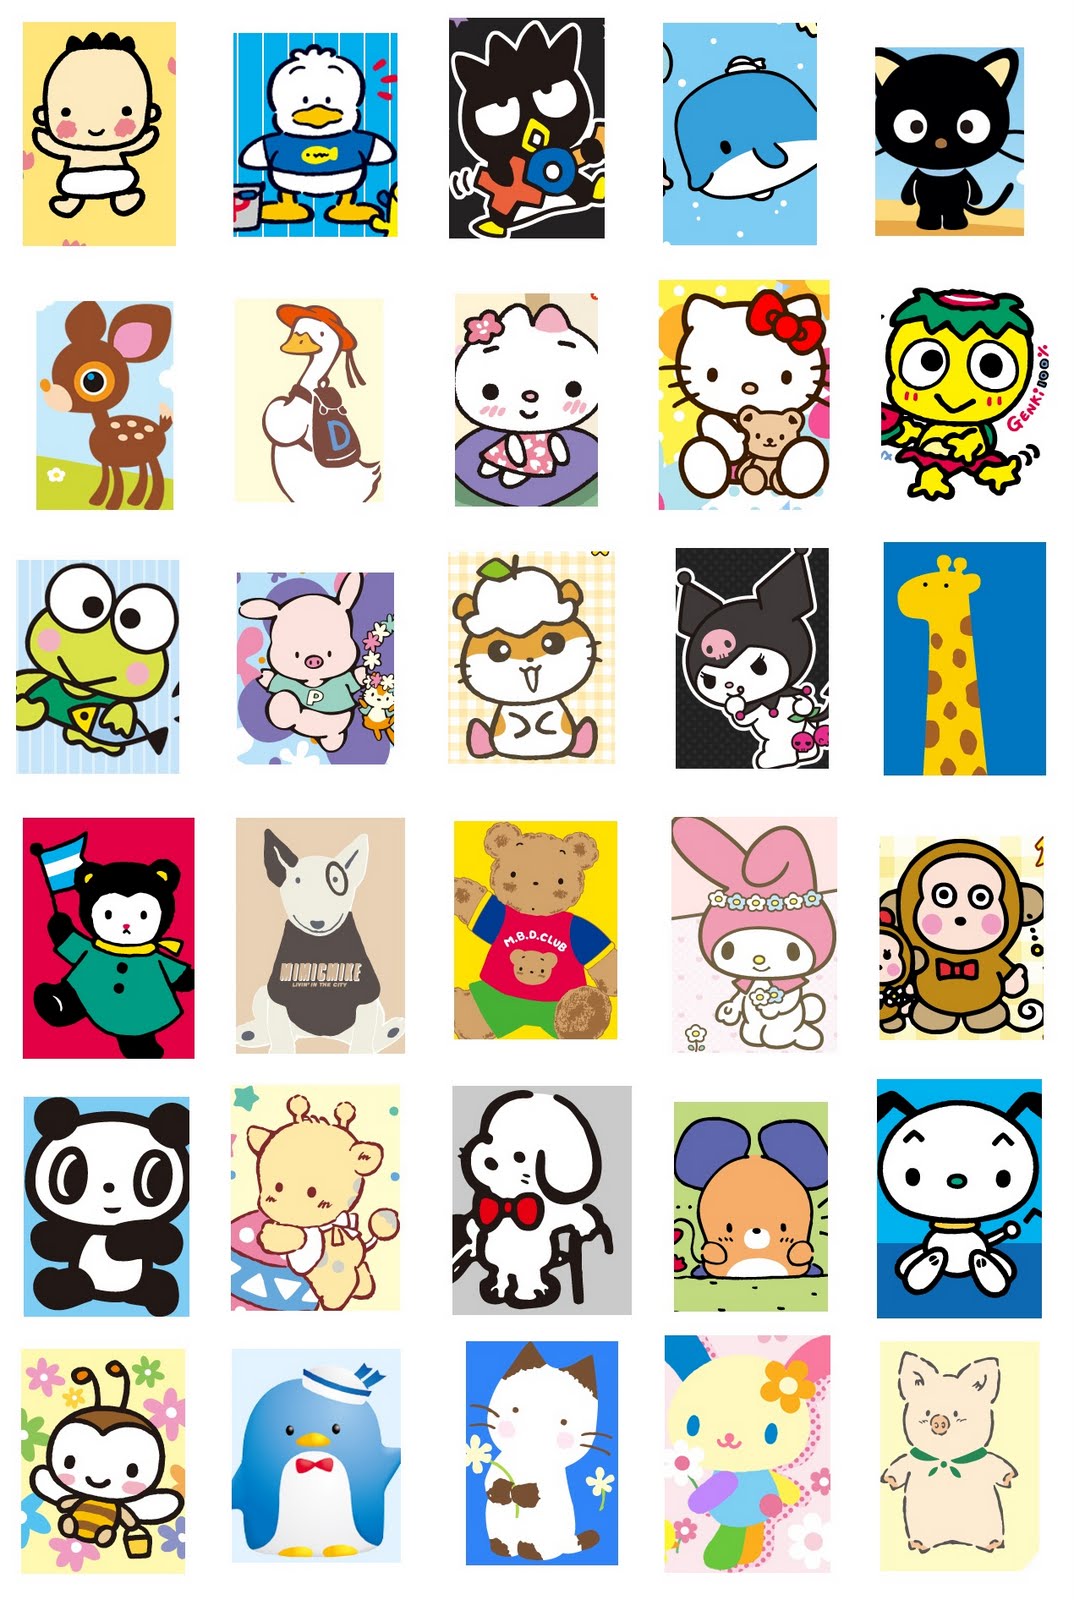 50 Sanrio Characters Wallpaper On Wallpapersafari